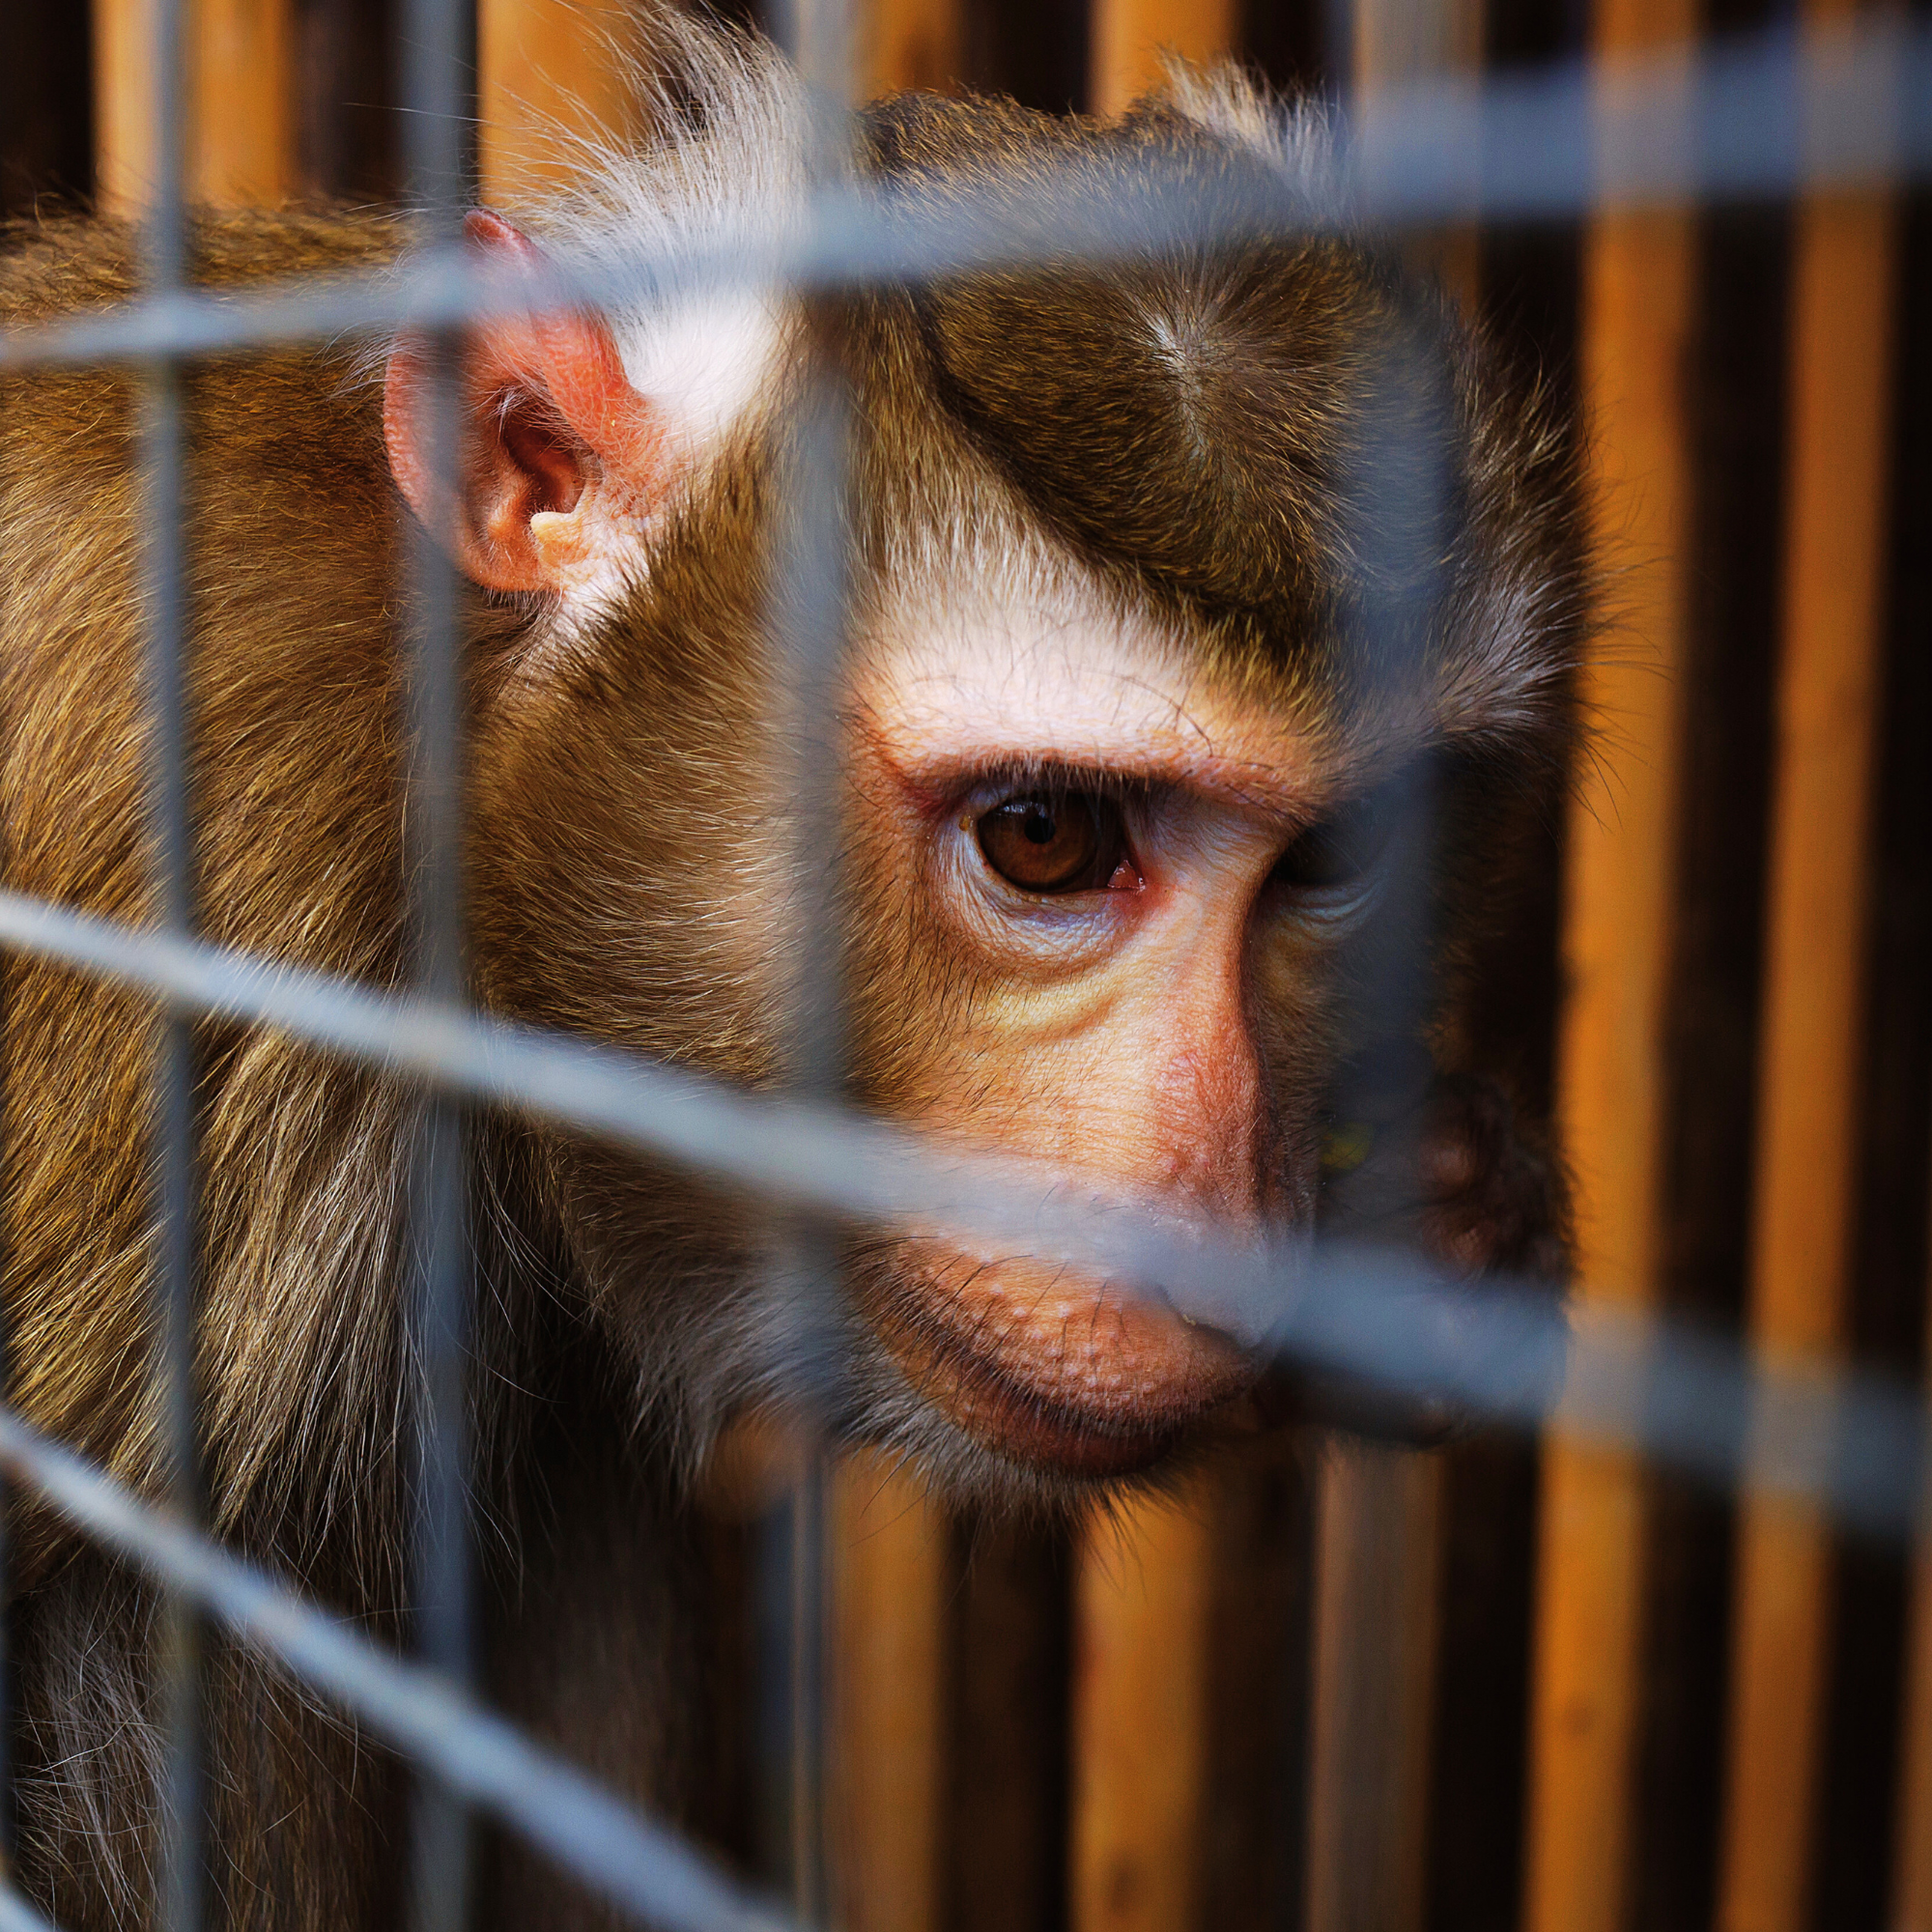 Singe derrière les barreaux d'une cage. Maltraitance des singes, exploitation animale